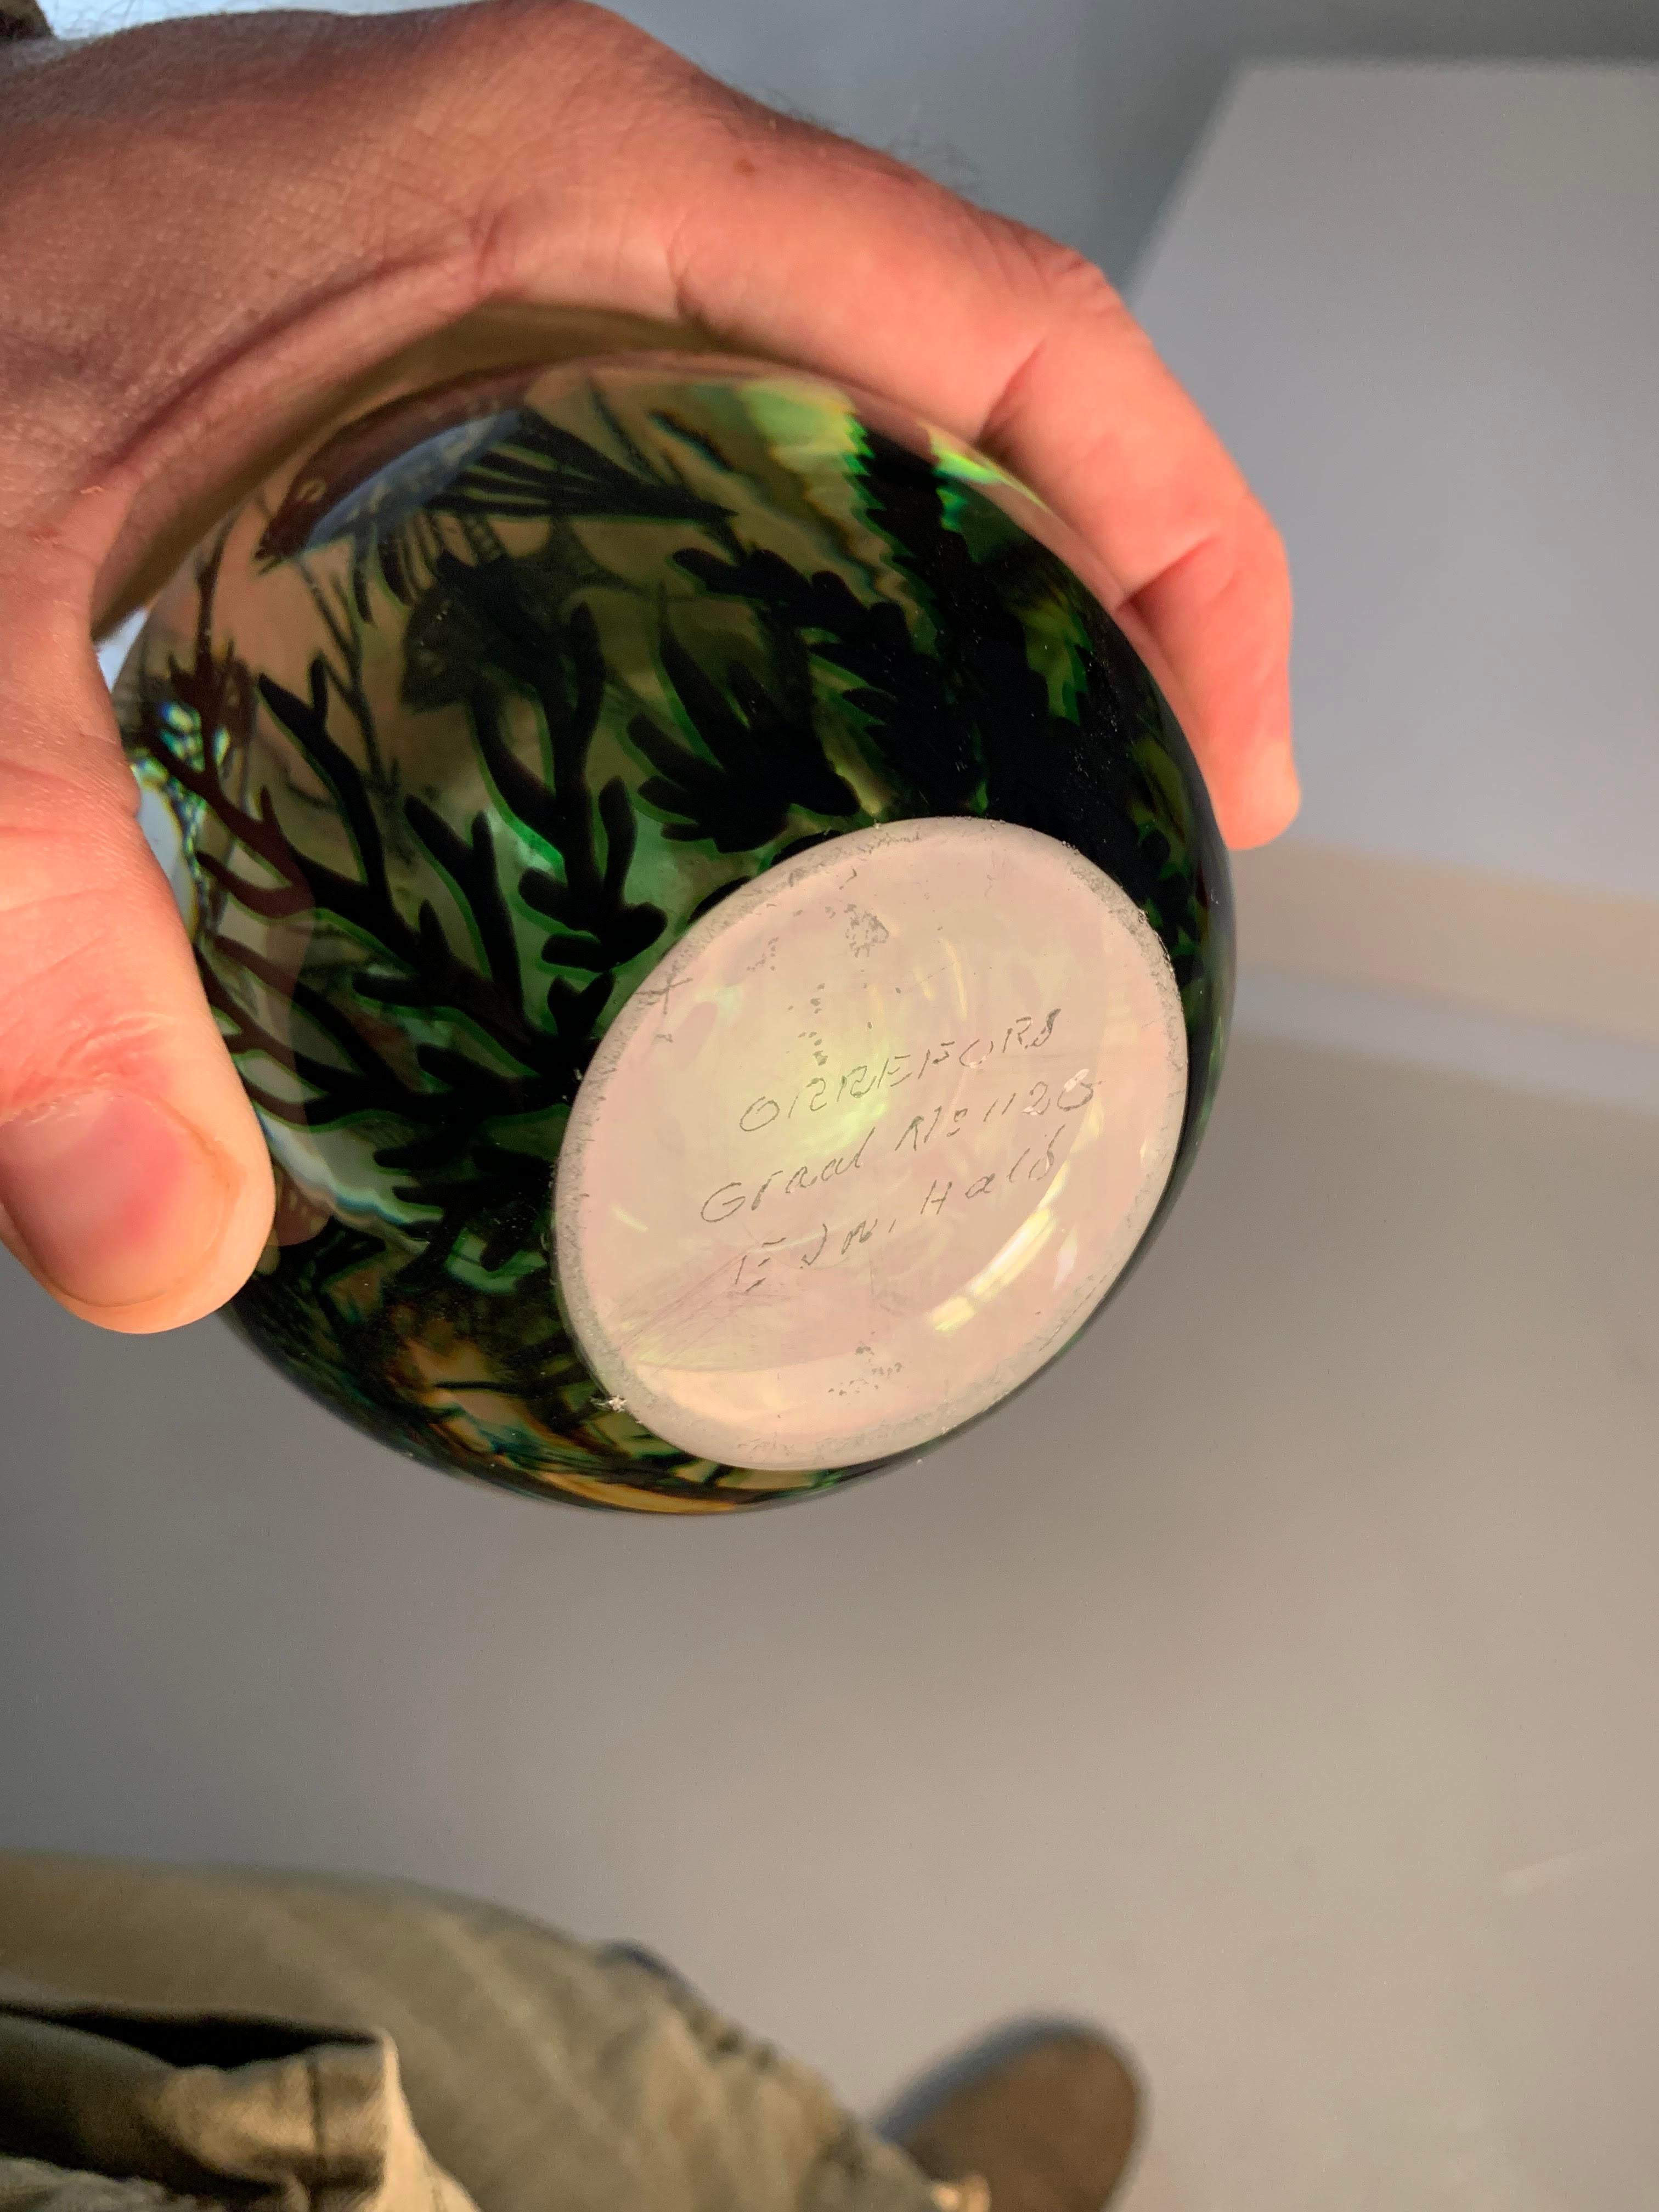 e vase suédois Fiskgraal Green d'Edward Hald pour Orrefors, fabriqué dans les années 1950, incarne l'art du verre scandinave et séduit par son allure captivante et son élégance intemporelle. Conçu par le très estimé artiste suédois Edward Hald, ce